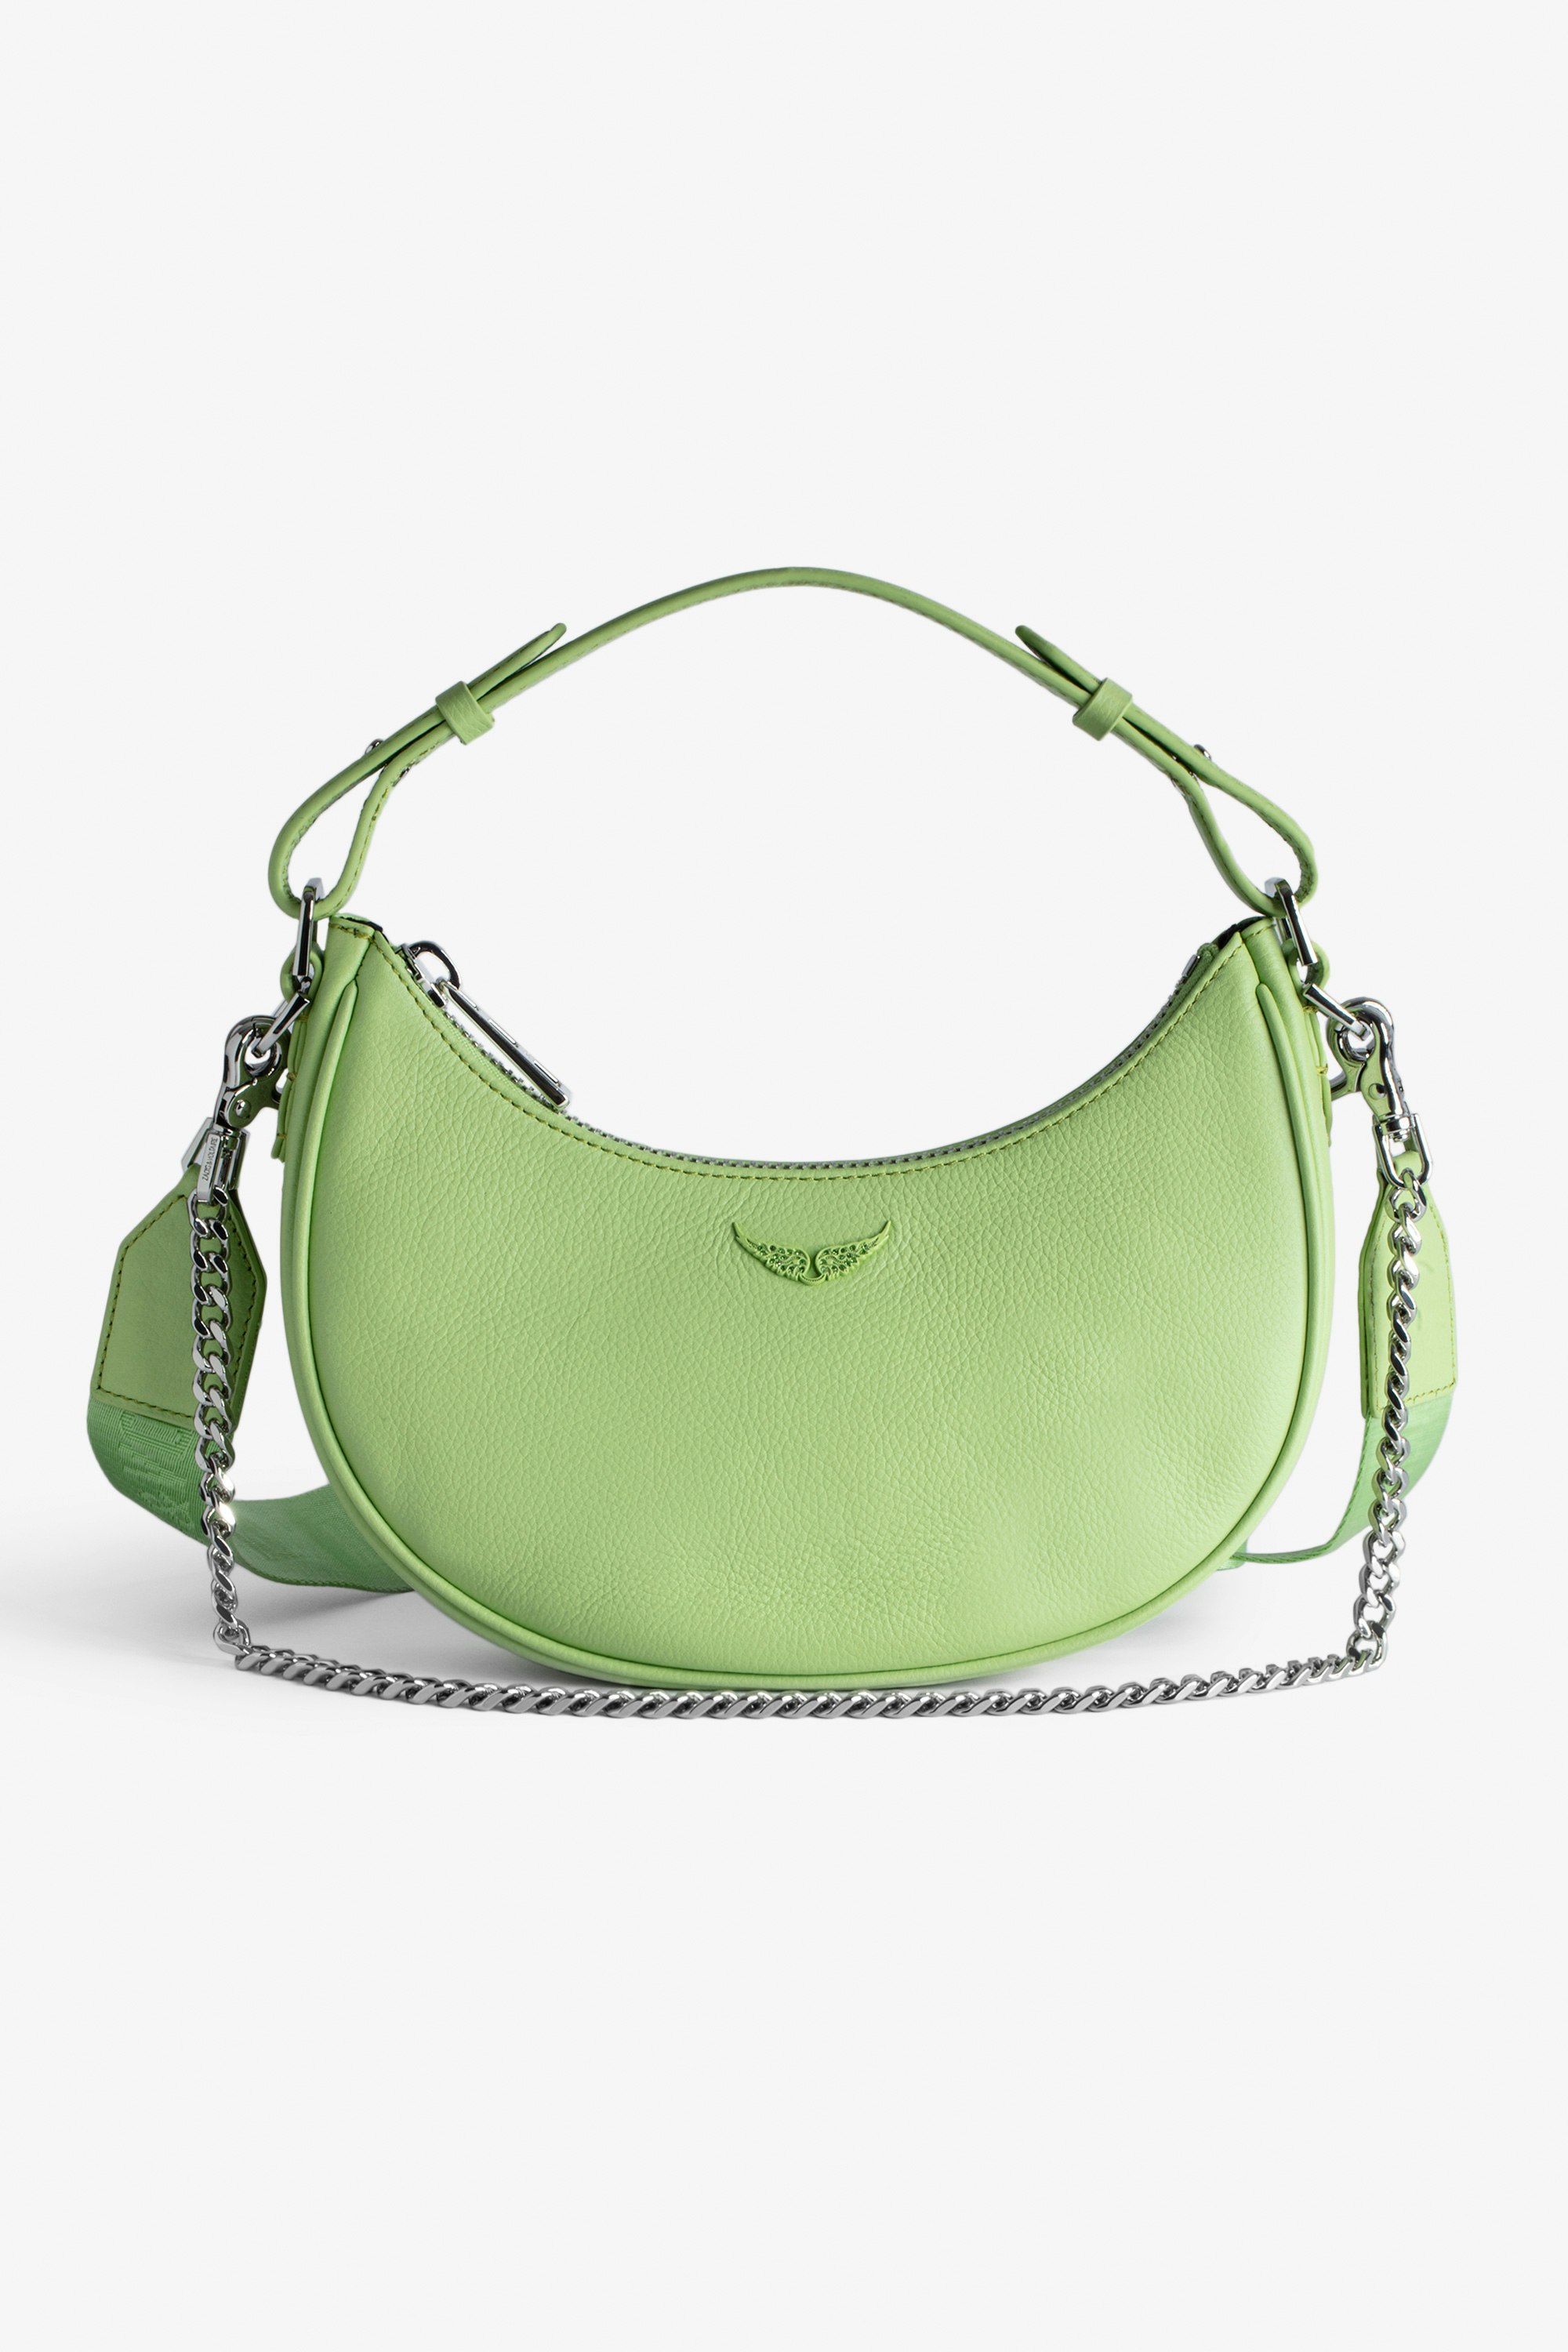 Tasche Moonrock - Halbmondtasche für Damen aus grünem genarbtem Leder mit kurzem Henkel, Schulterriemen, Kette und Signature-Flügeln.